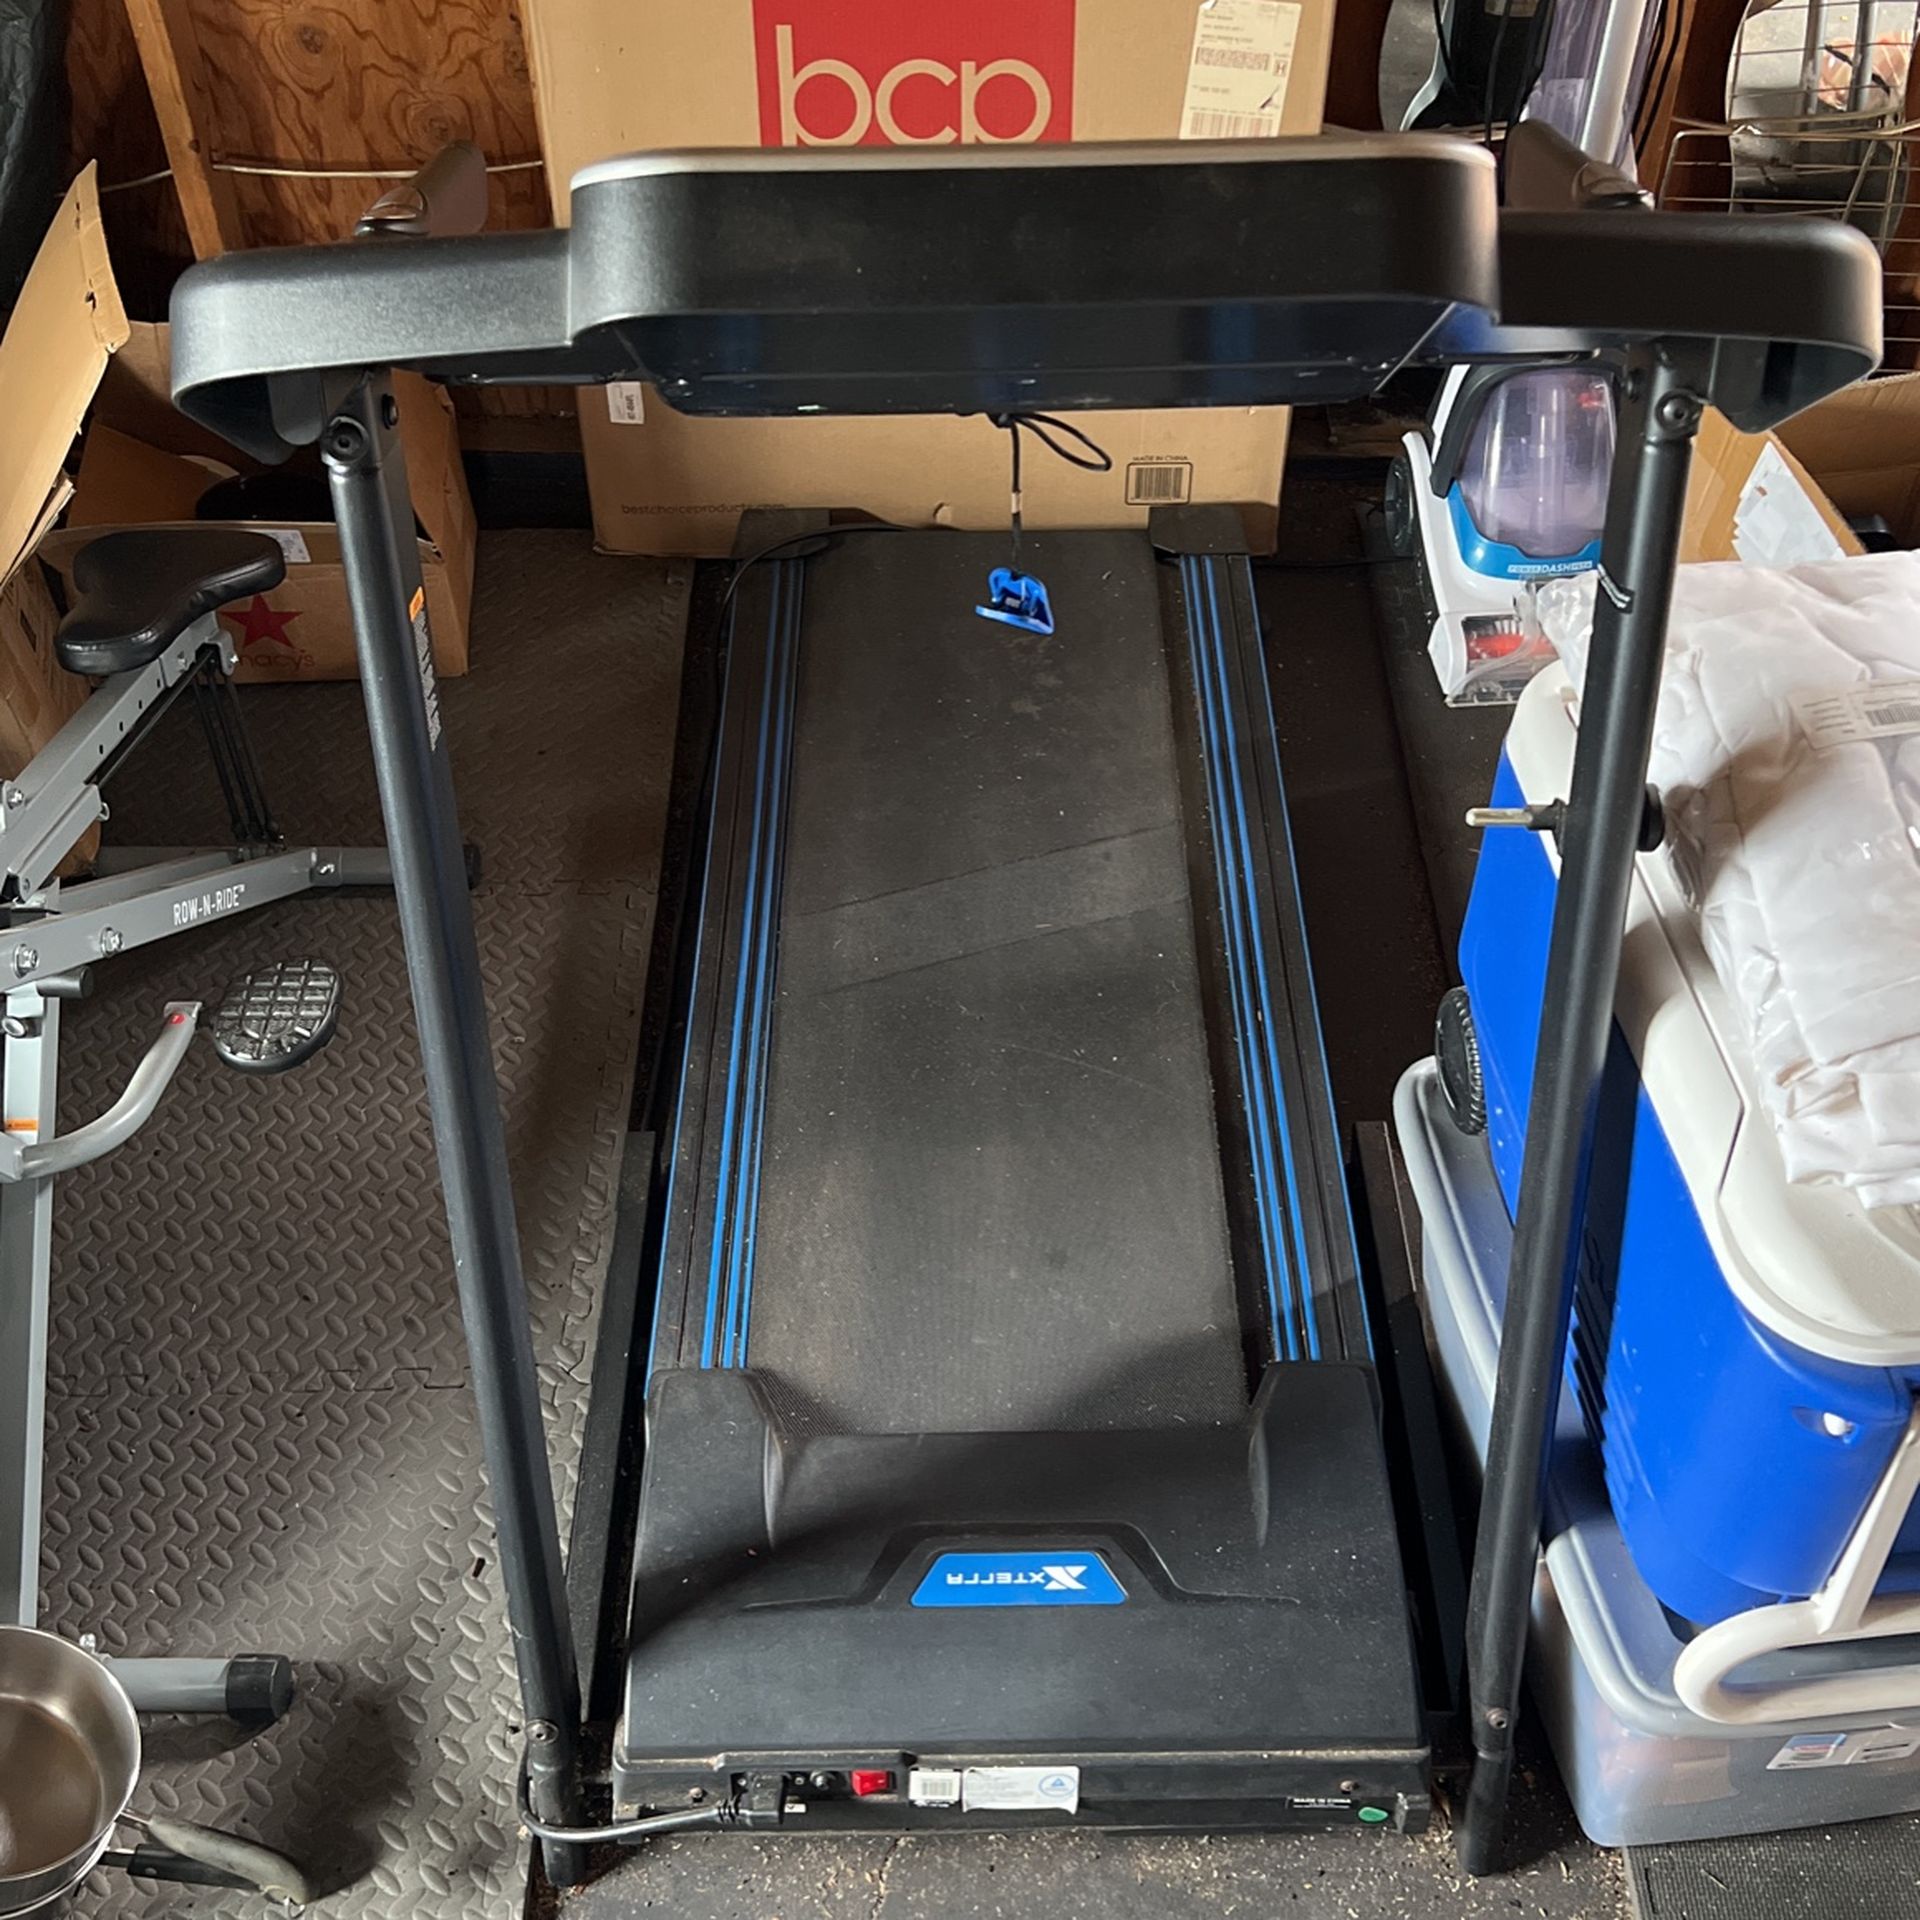 Treadmill for $150.00